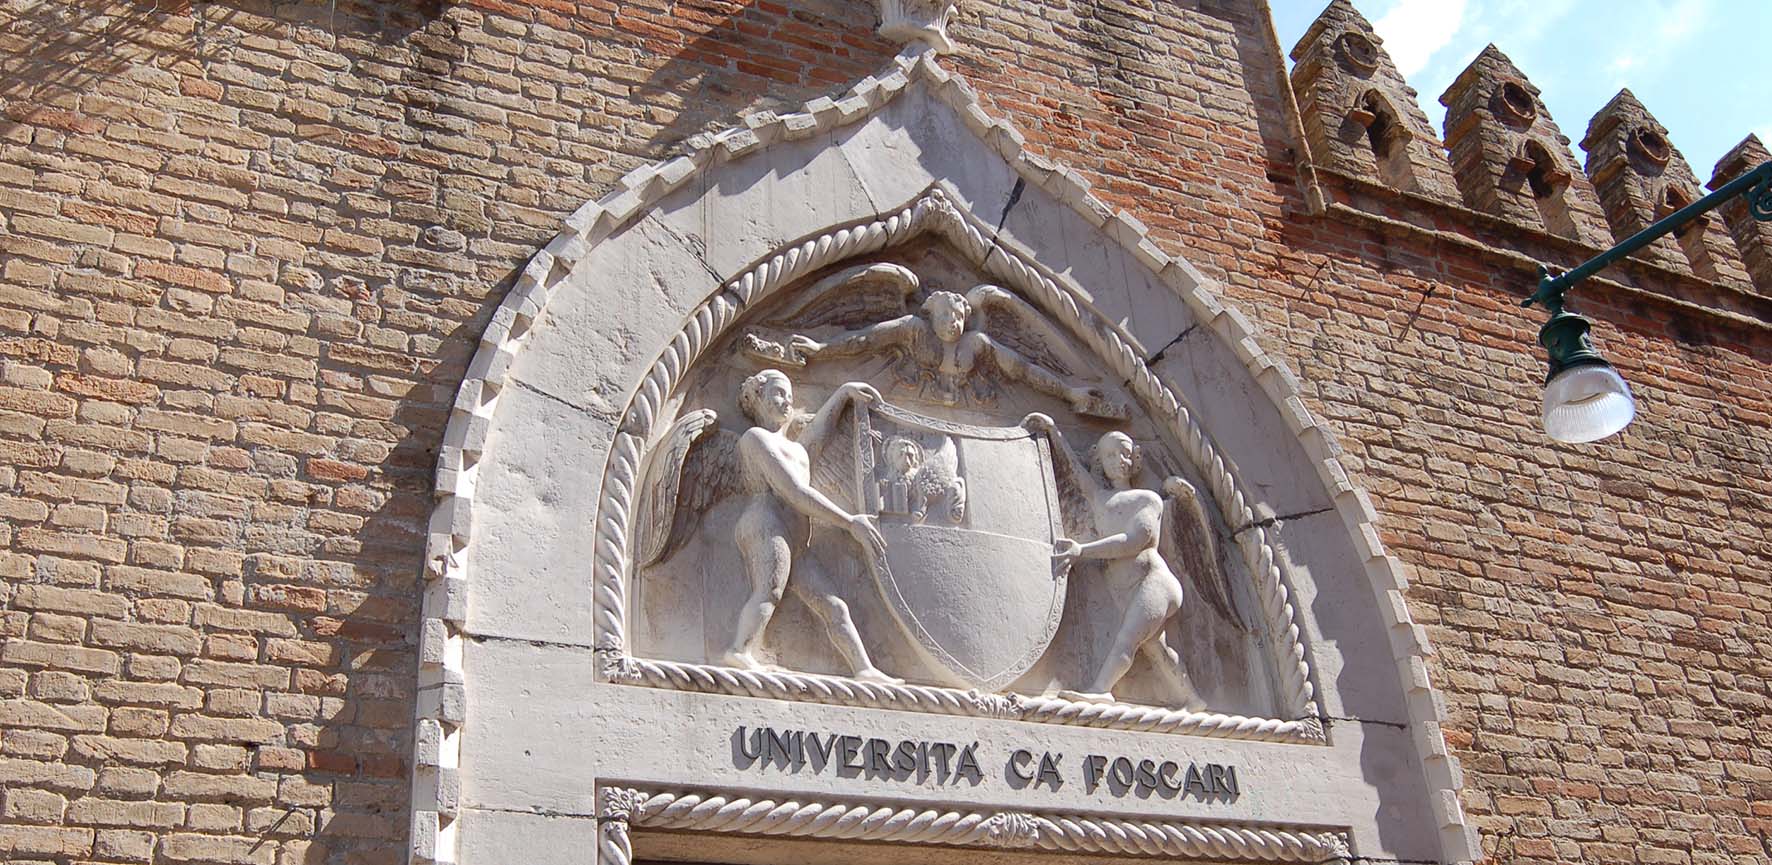 Università CaFoscari portale ingresso stemma